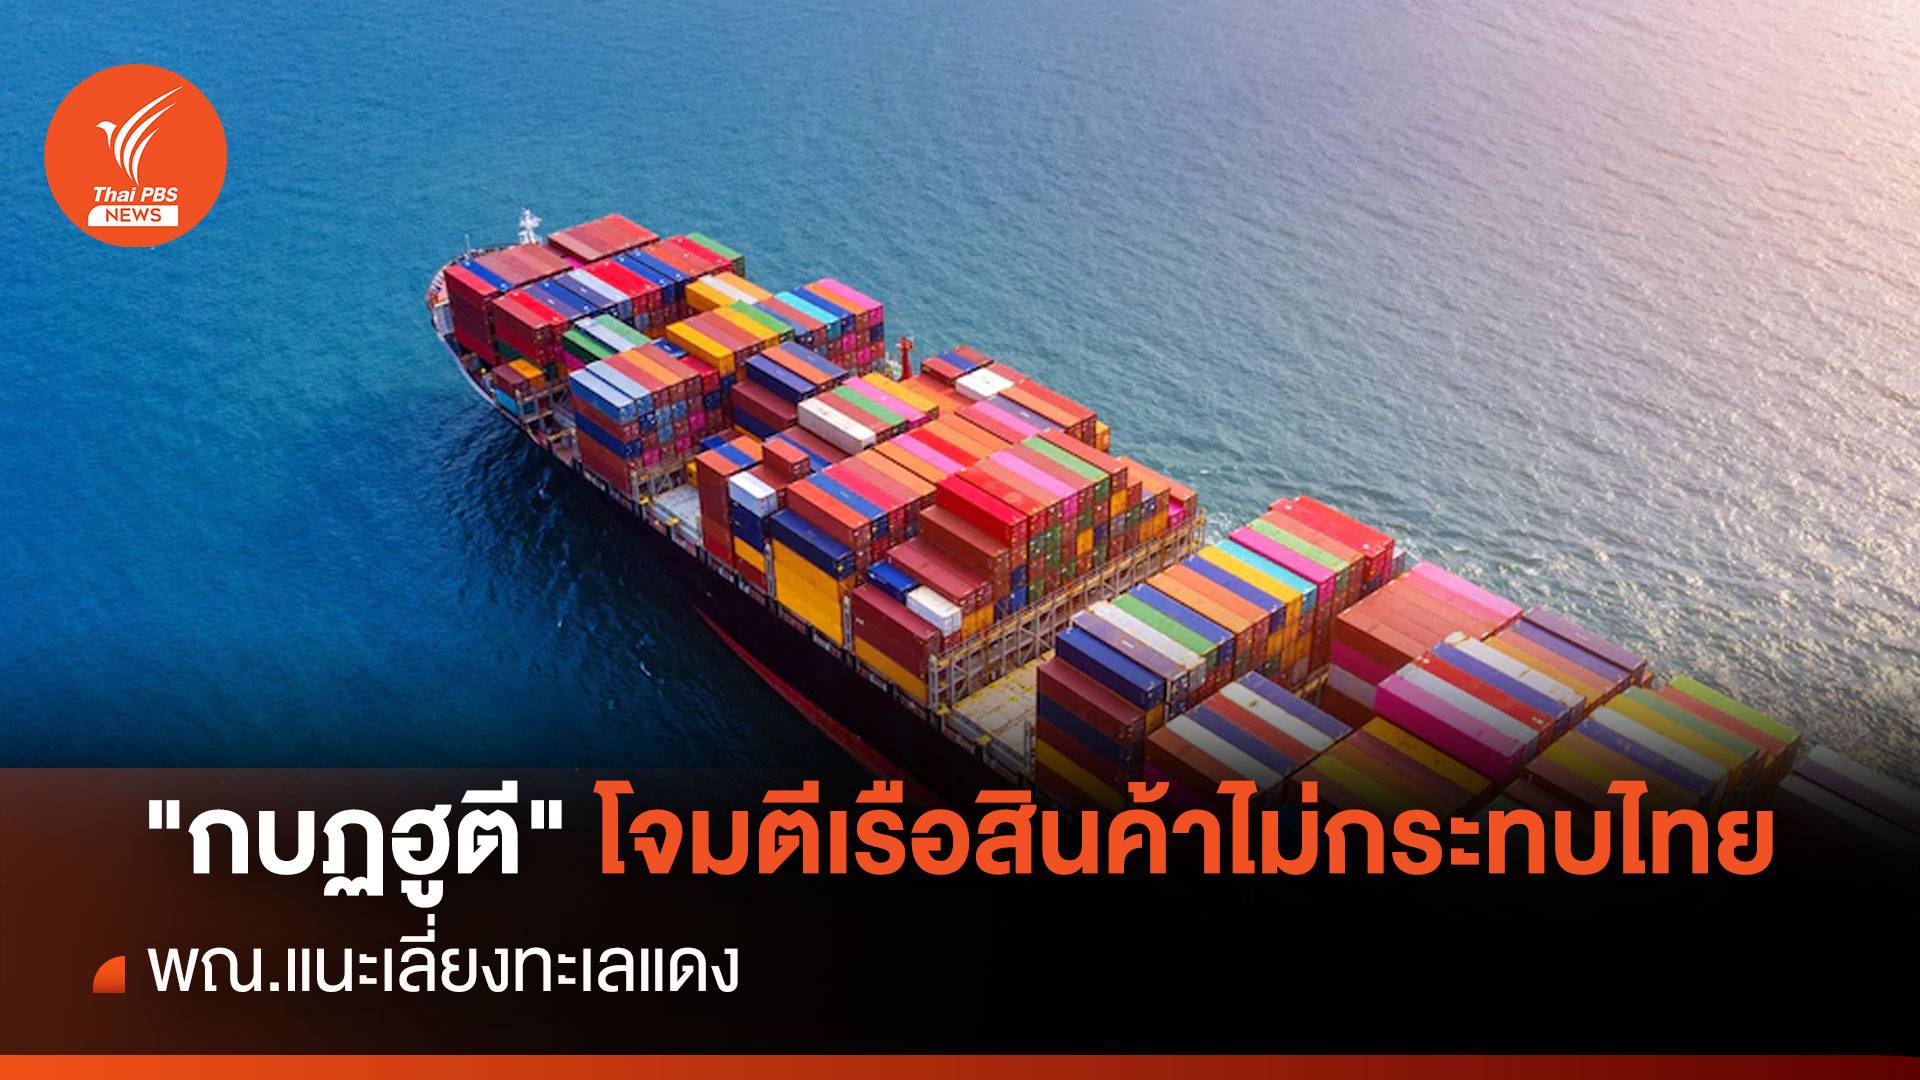 "กบฏฮูตี" โจมตีเรือสินค้าไม่กระทบไทย พณ.แนะเลี่ยงทะเลแดง 